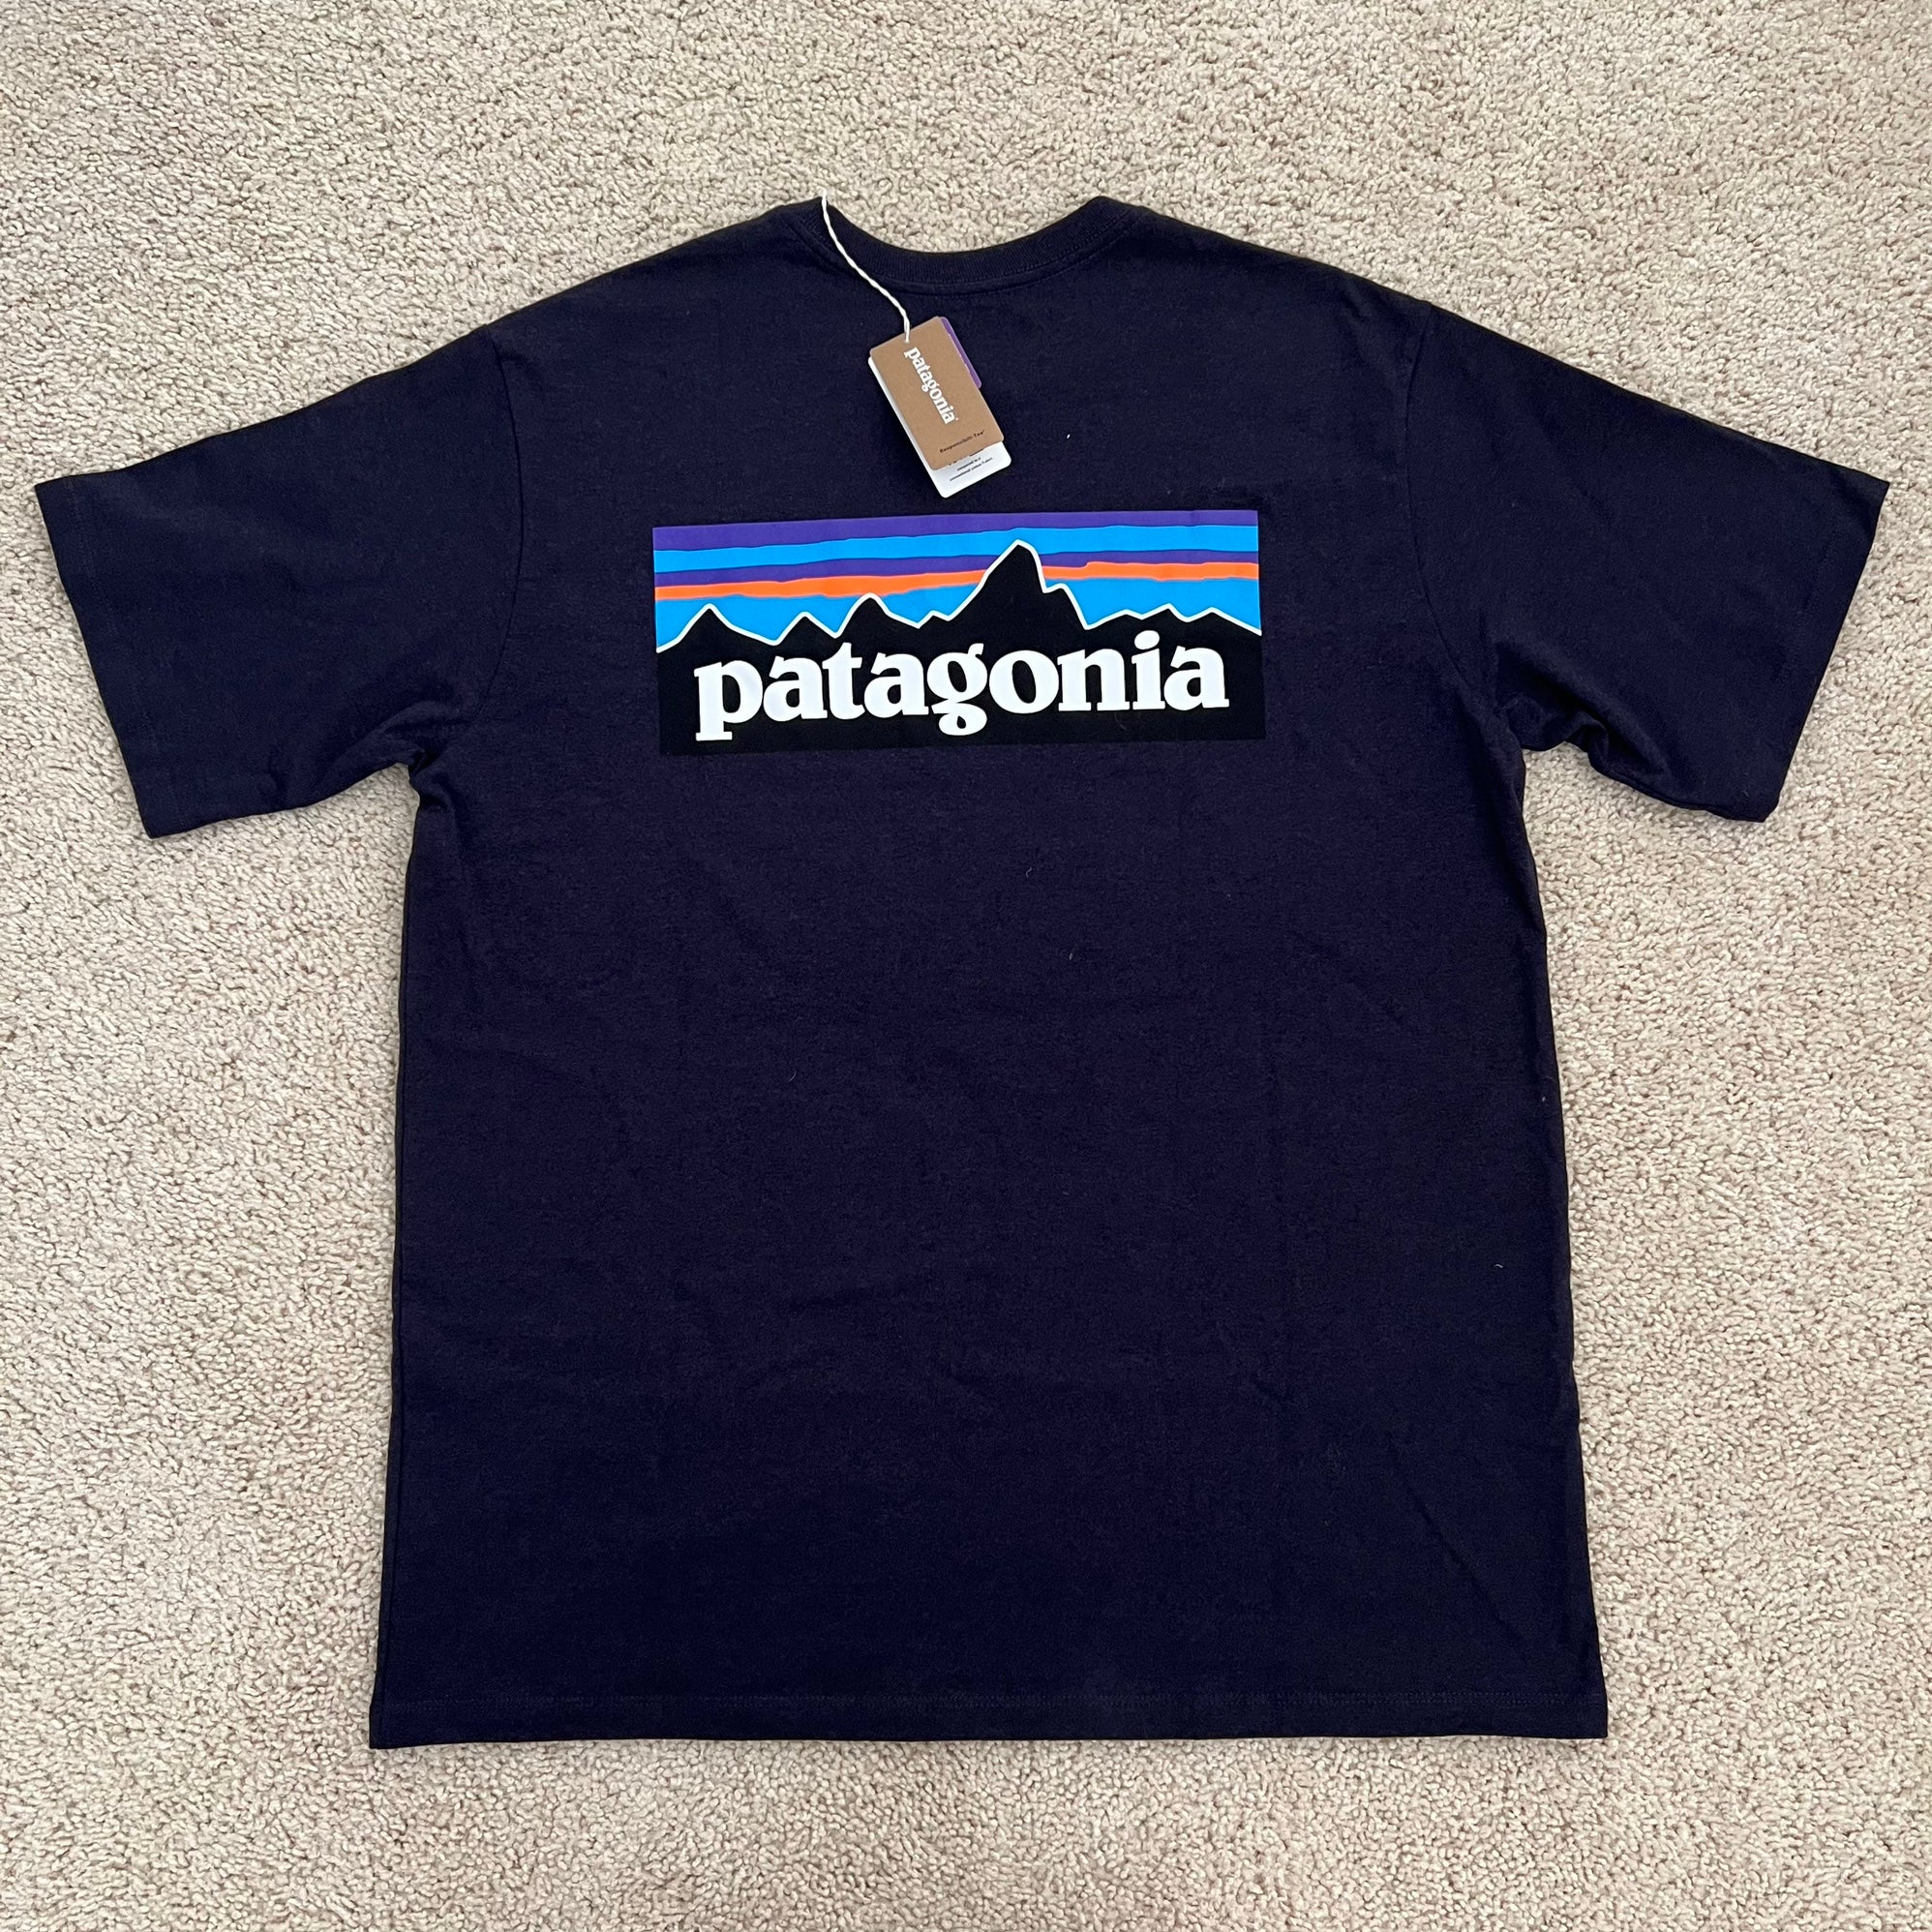 Black Used Large Men's Patagonia Shirt